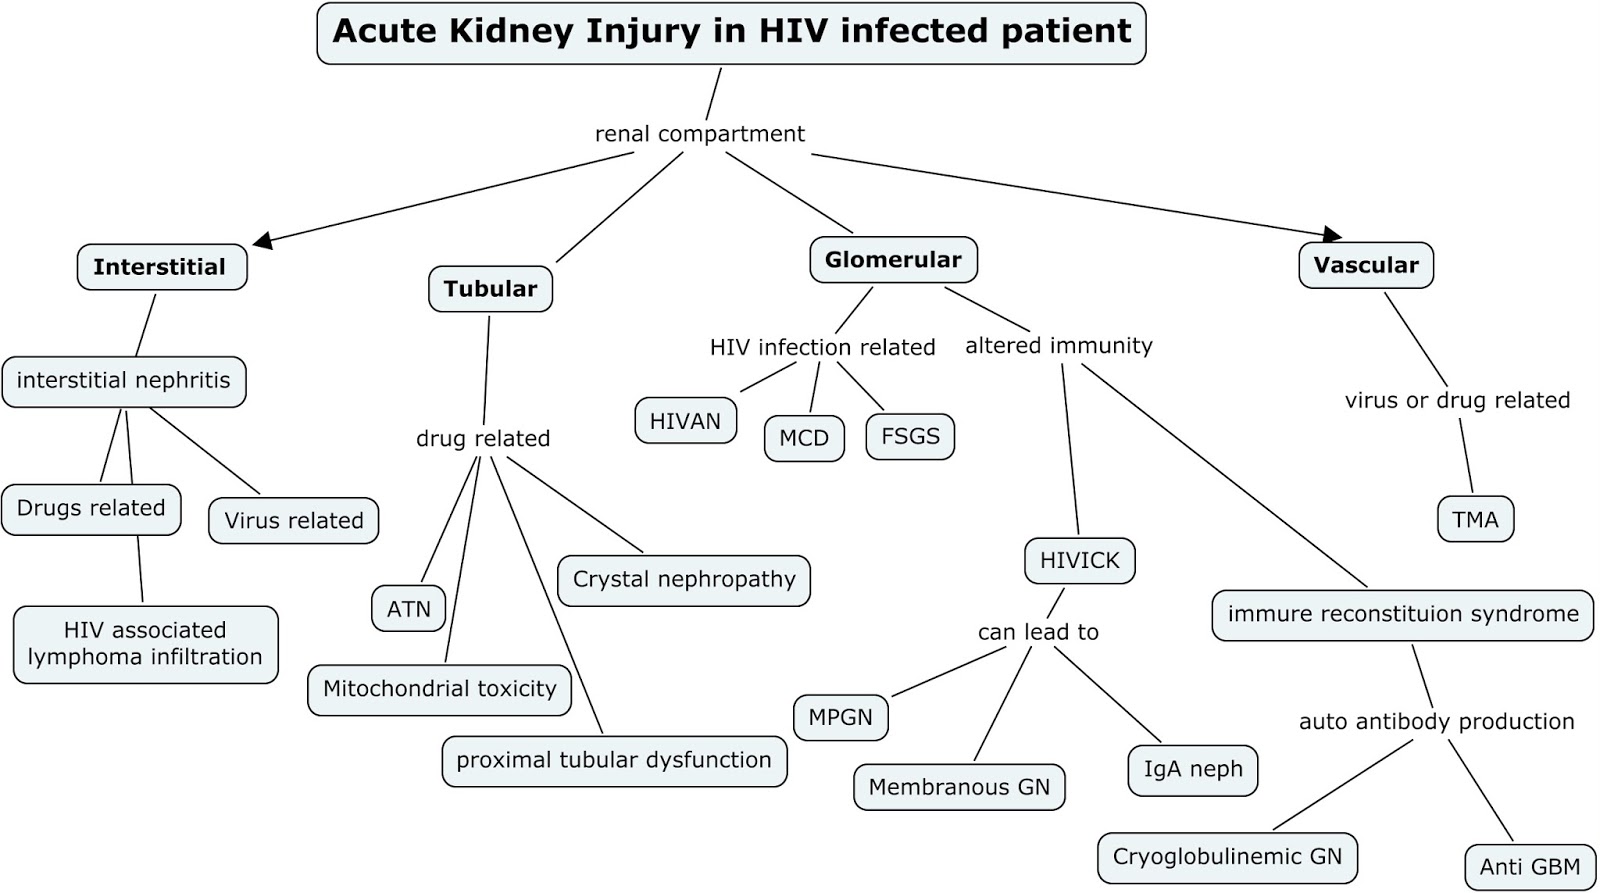 acute renal failure concept map Nephron Power Concept Map Acute Kidney Injury In Hiv acute renal failure concept map